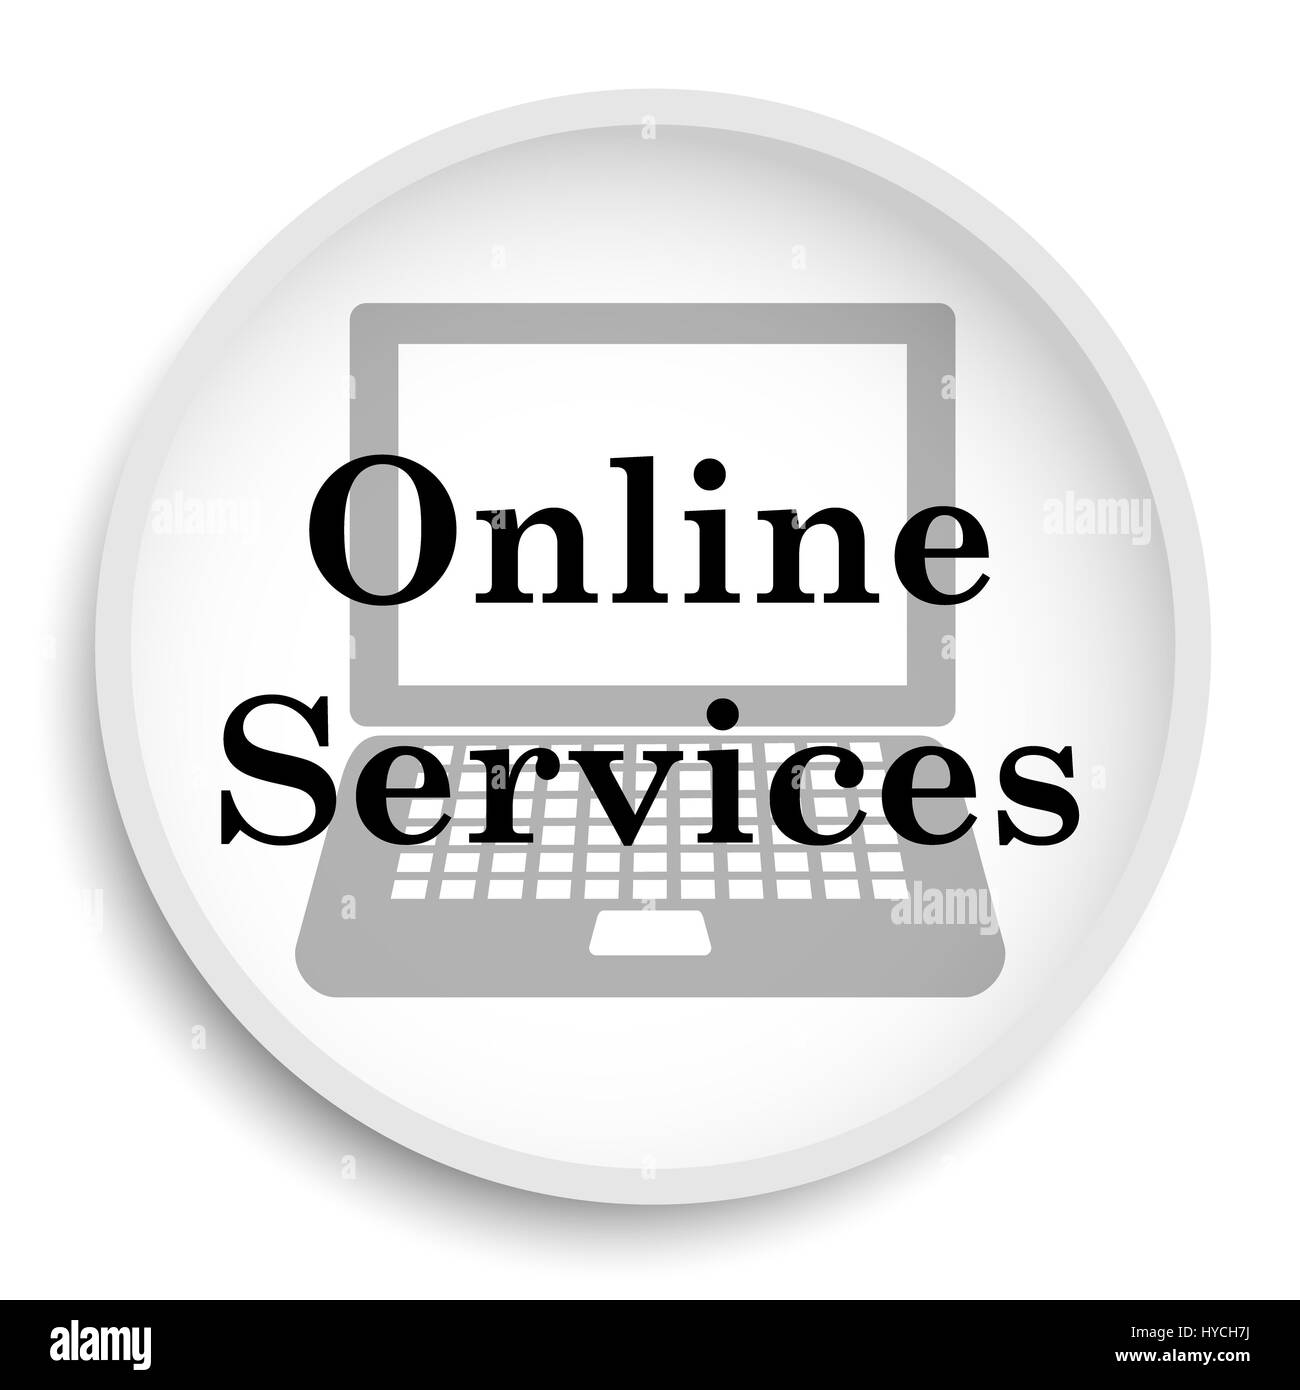 Biểu tượng dịch vụ trực tuyến: Những biểu tượng dịch vụ trực tuyến tuyệt đẹp chắc chắn sẽ làm hài lòng mọi nhà quản trị website. Hãy cùng tìm hiểu và chọn lựa cho mình những biểu tượng đẹp mắt và phù hợp với chủ đề dịch vụ của bạn.